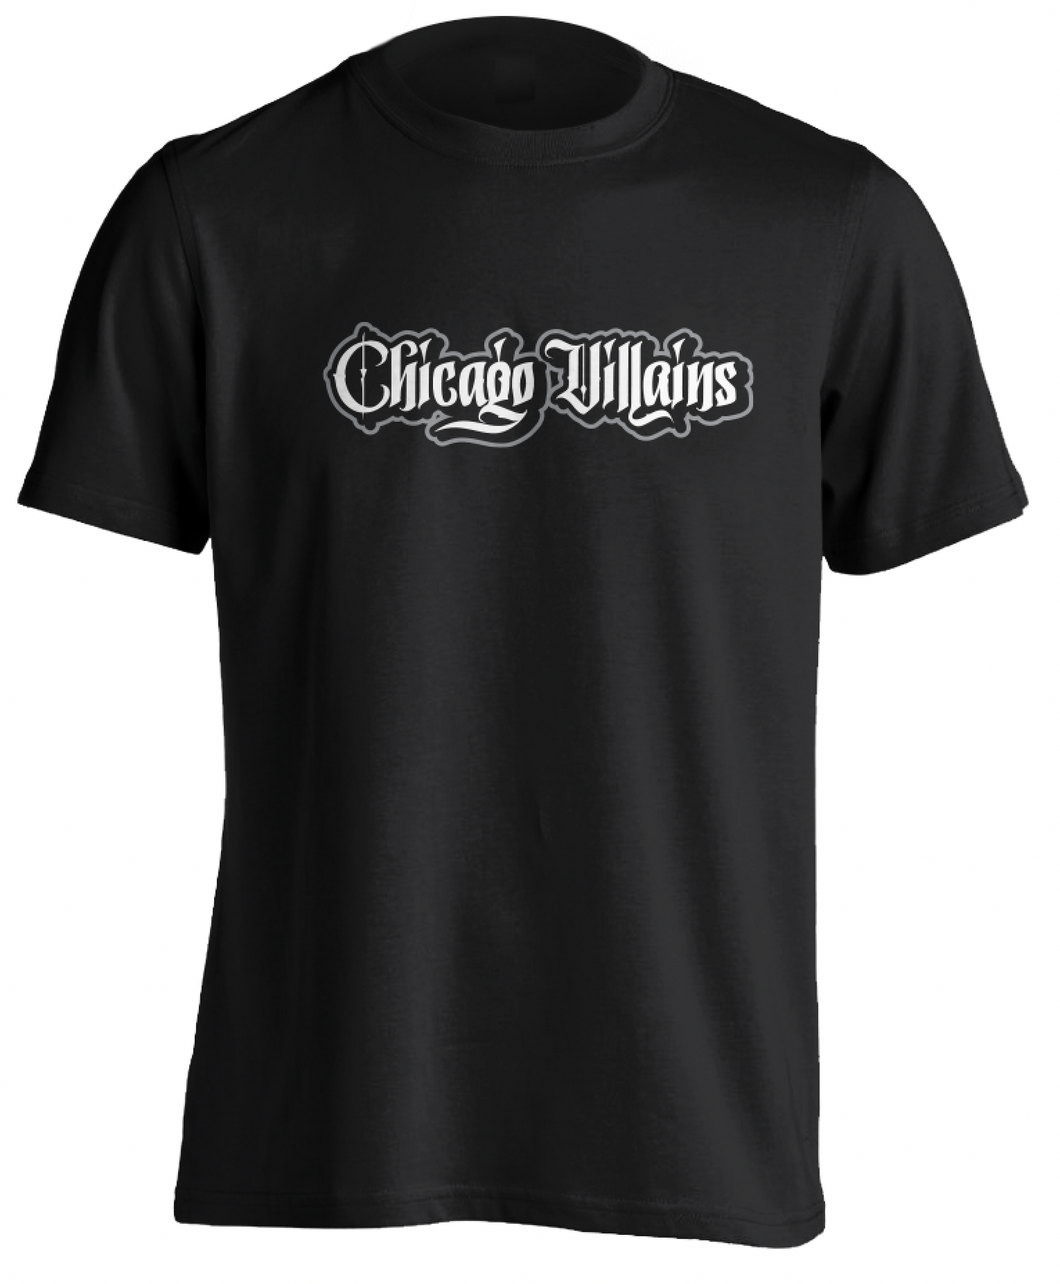 Chicago Villains T-Shirt